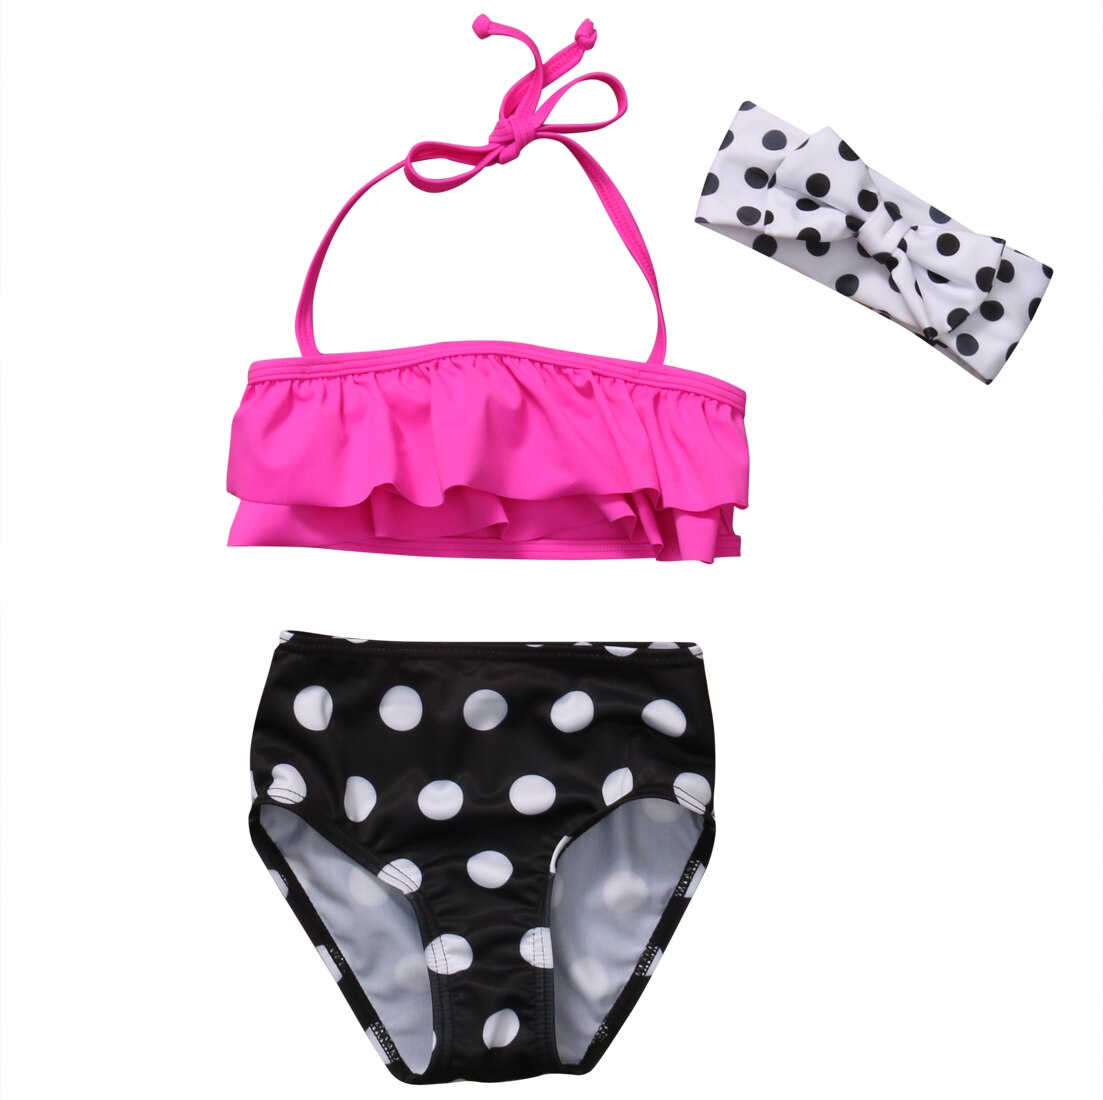 Små piger todelt polkaprikker badedragt børn baby pige bikini dragt badetøj badning svømning svømmer kostume tøj: 1 2 år